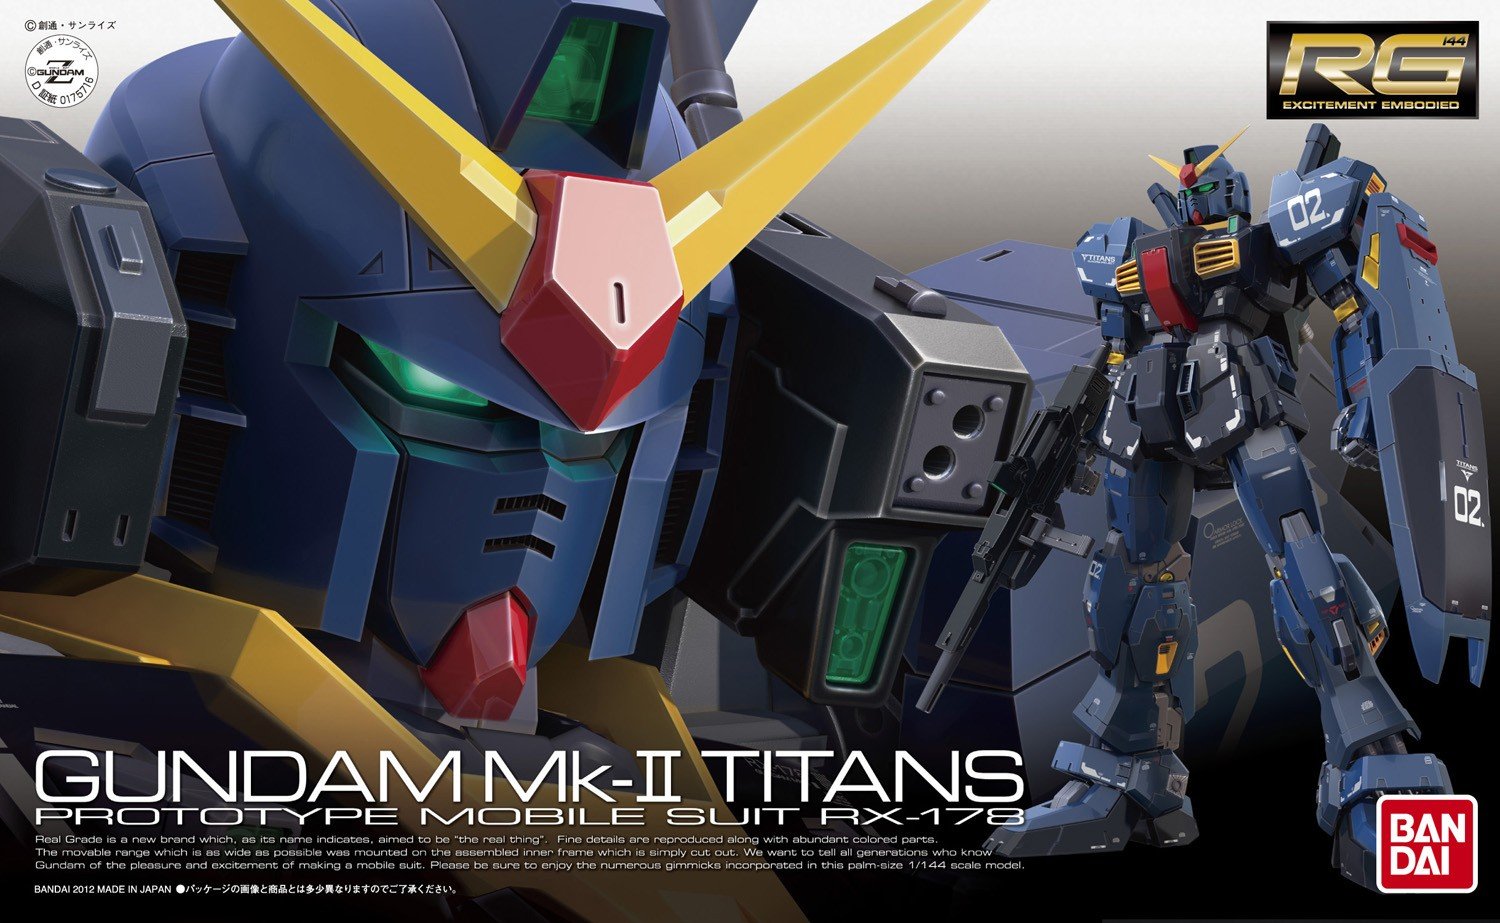 Rg Rx 178 Gundam Mk Ii Titans Gunpla Wiki Fandom